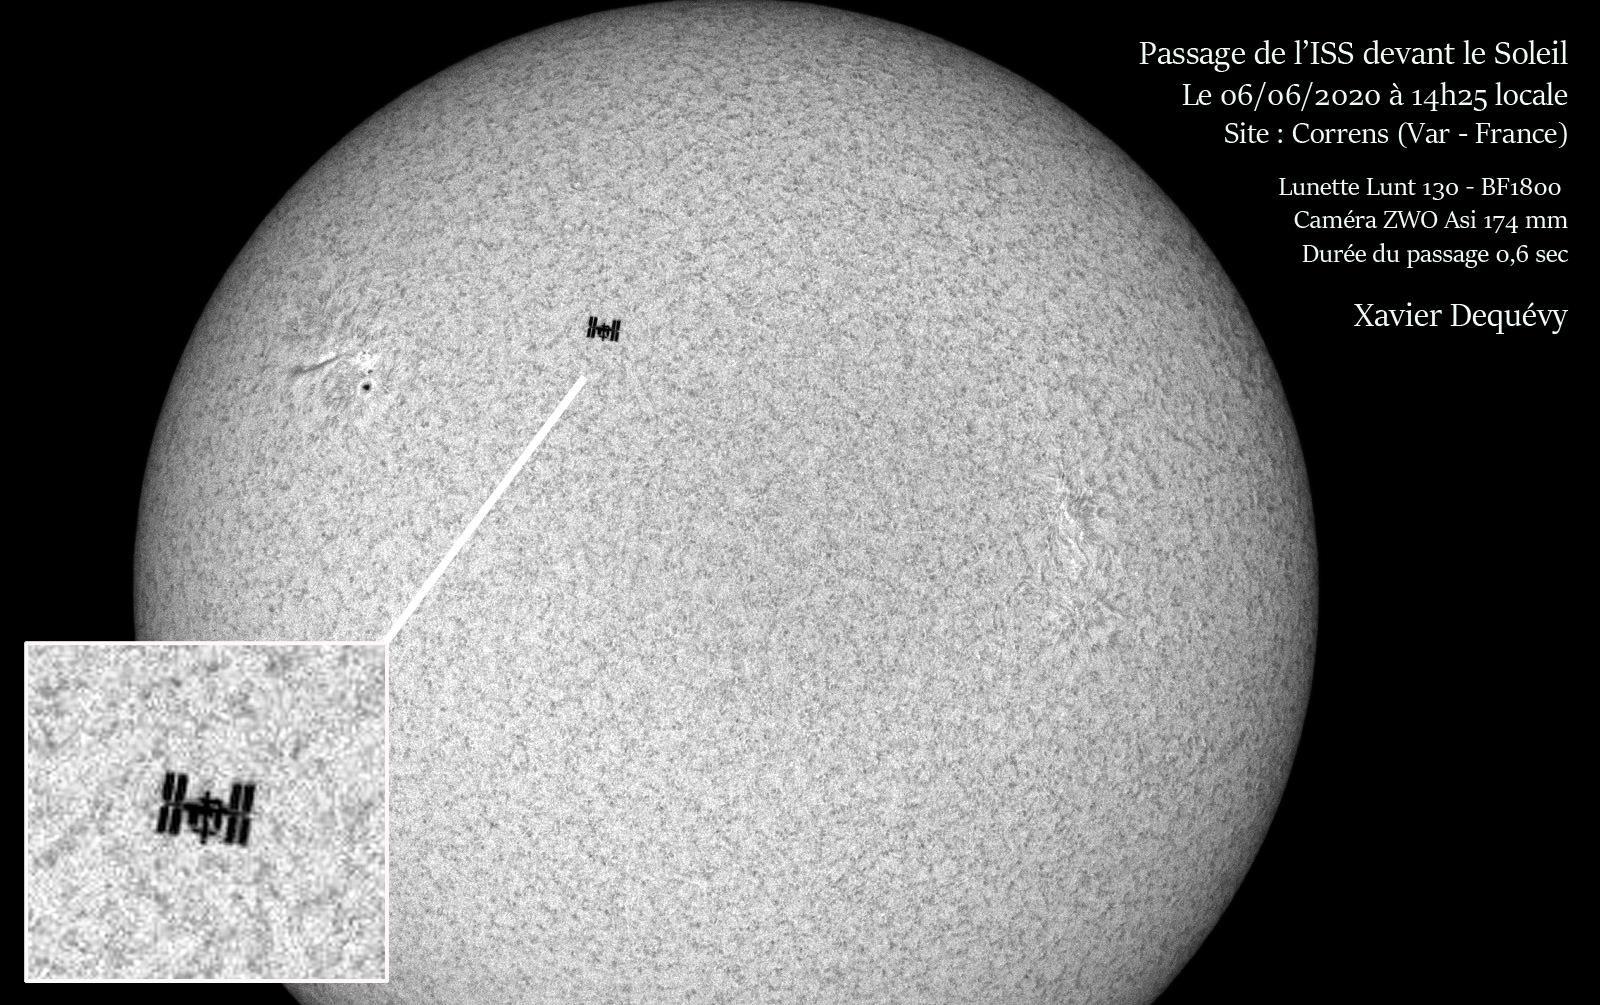 LUNT LS130MT/B1200 Télescope APO polyvalent pour le soleil + le ciel étoilé